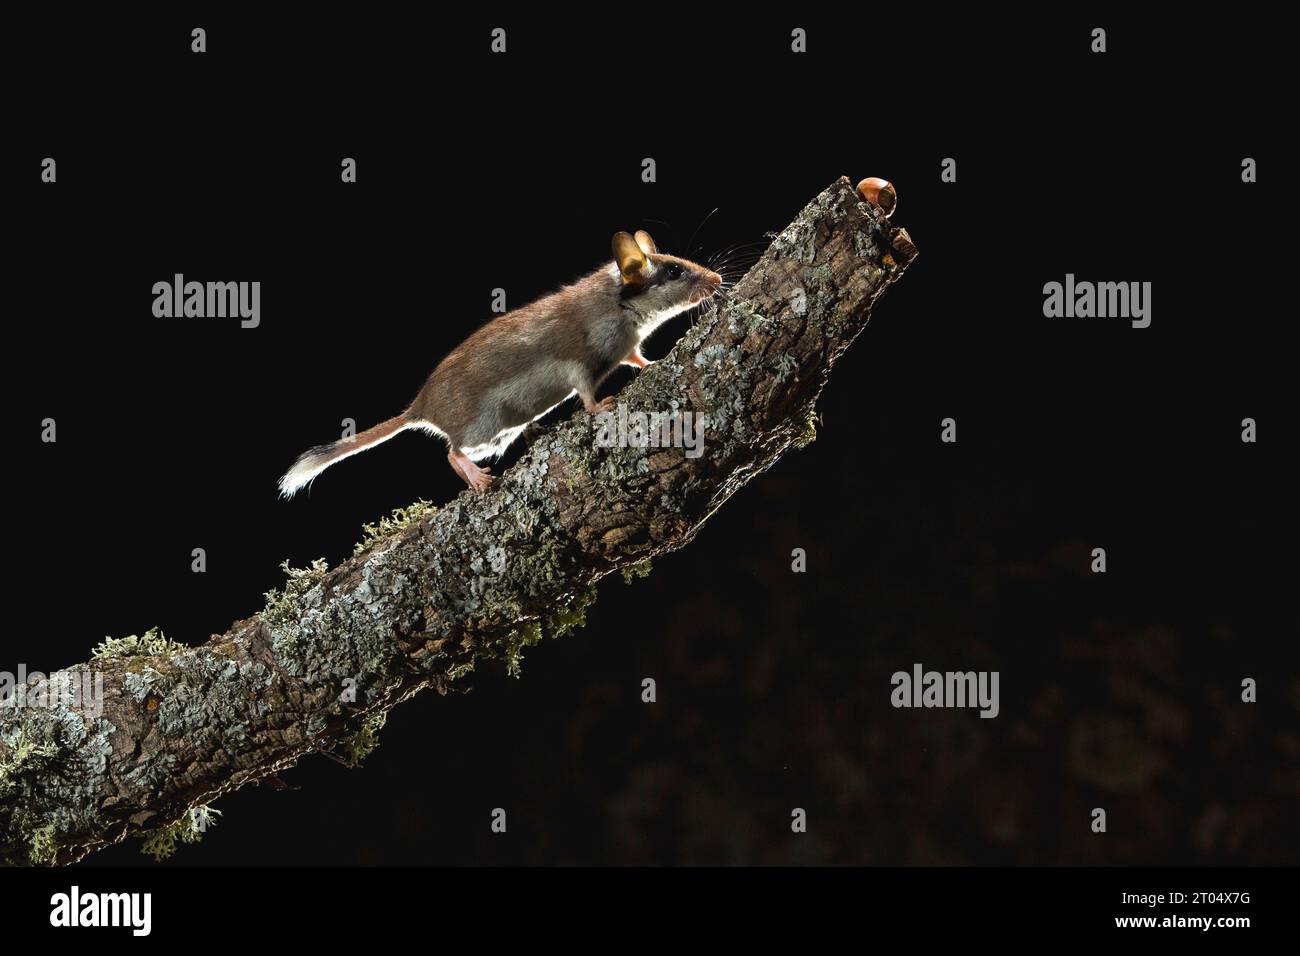 Giardinetto (Eliomys quercinus), foraggiando di notte su un ramo lichended, vista laterale, Spagna Foto Stock